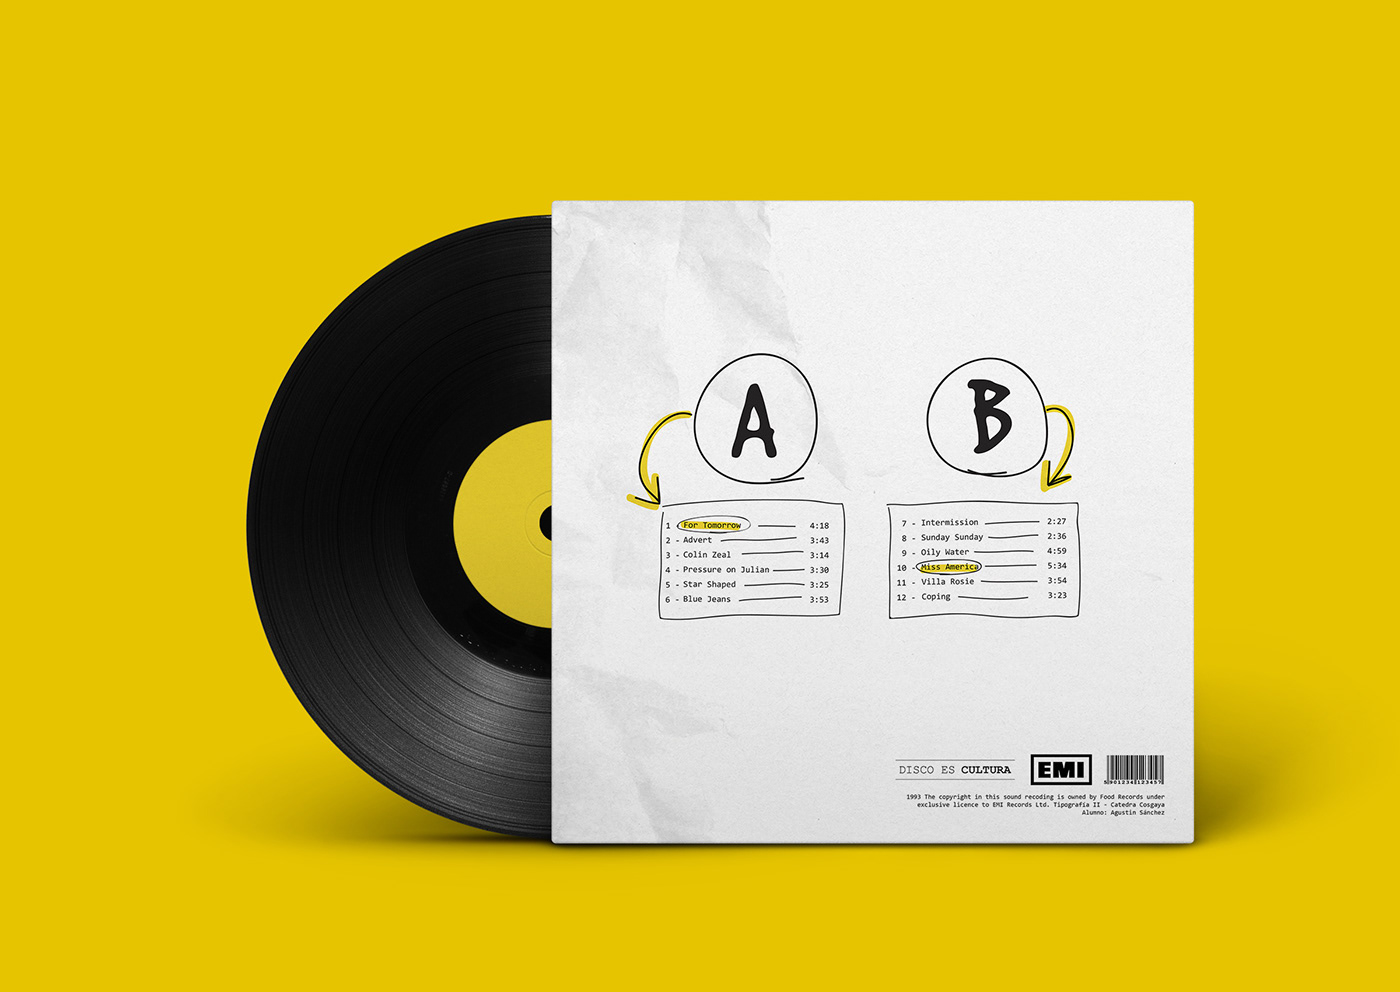 vinilo blur disco musica diseño grafico vinyl design graphic music